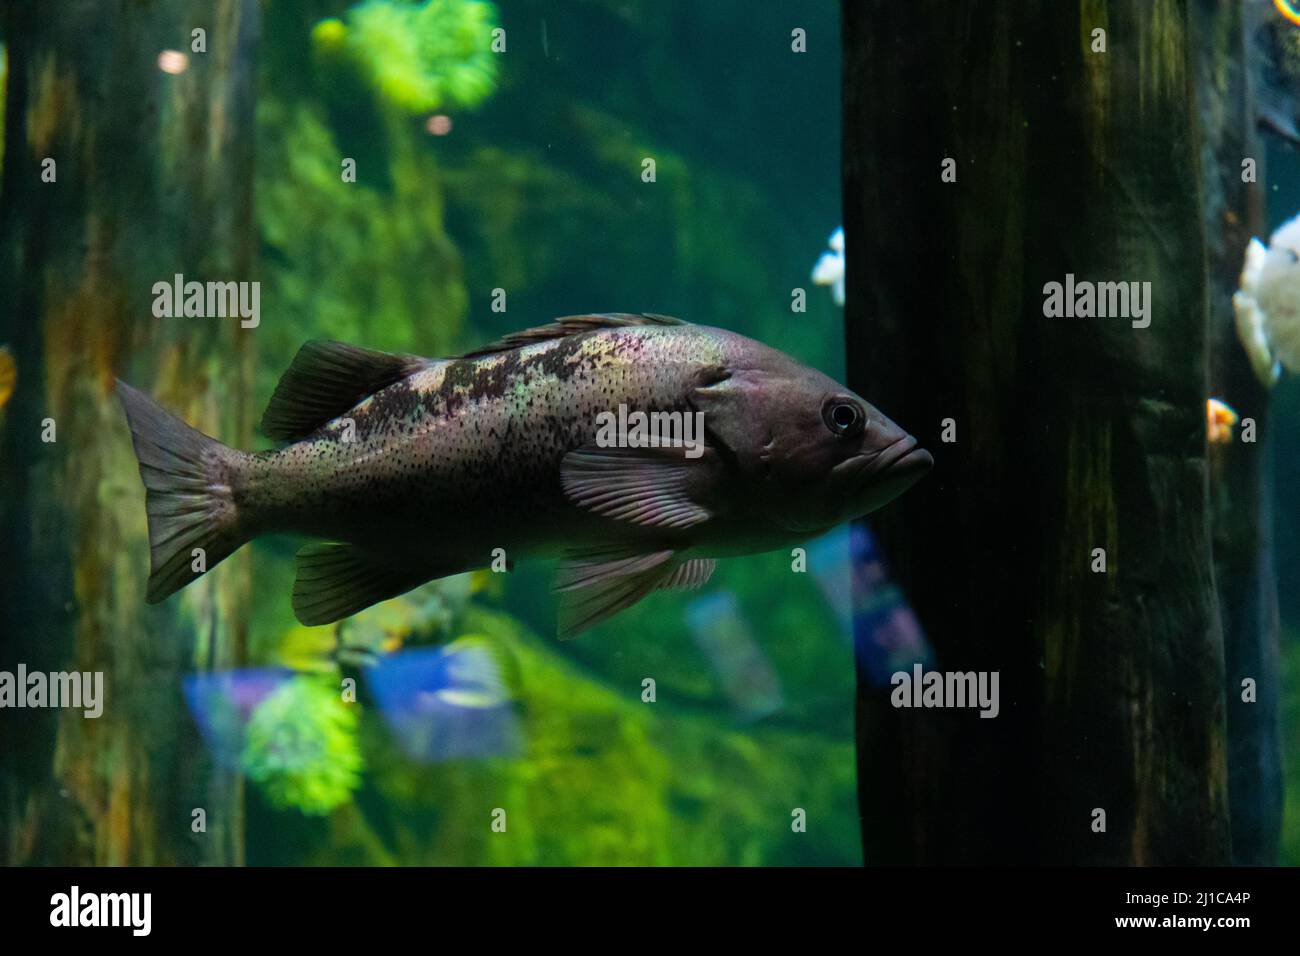 Im Aquarium befindet sich ein großer dunkler Fisch, grau und schwarz in der Farbe. Hinter dem Fisch ist eine größere grüne Ansicht, verschwommen, um die Fische im Fokus zu halten. Stockfoto